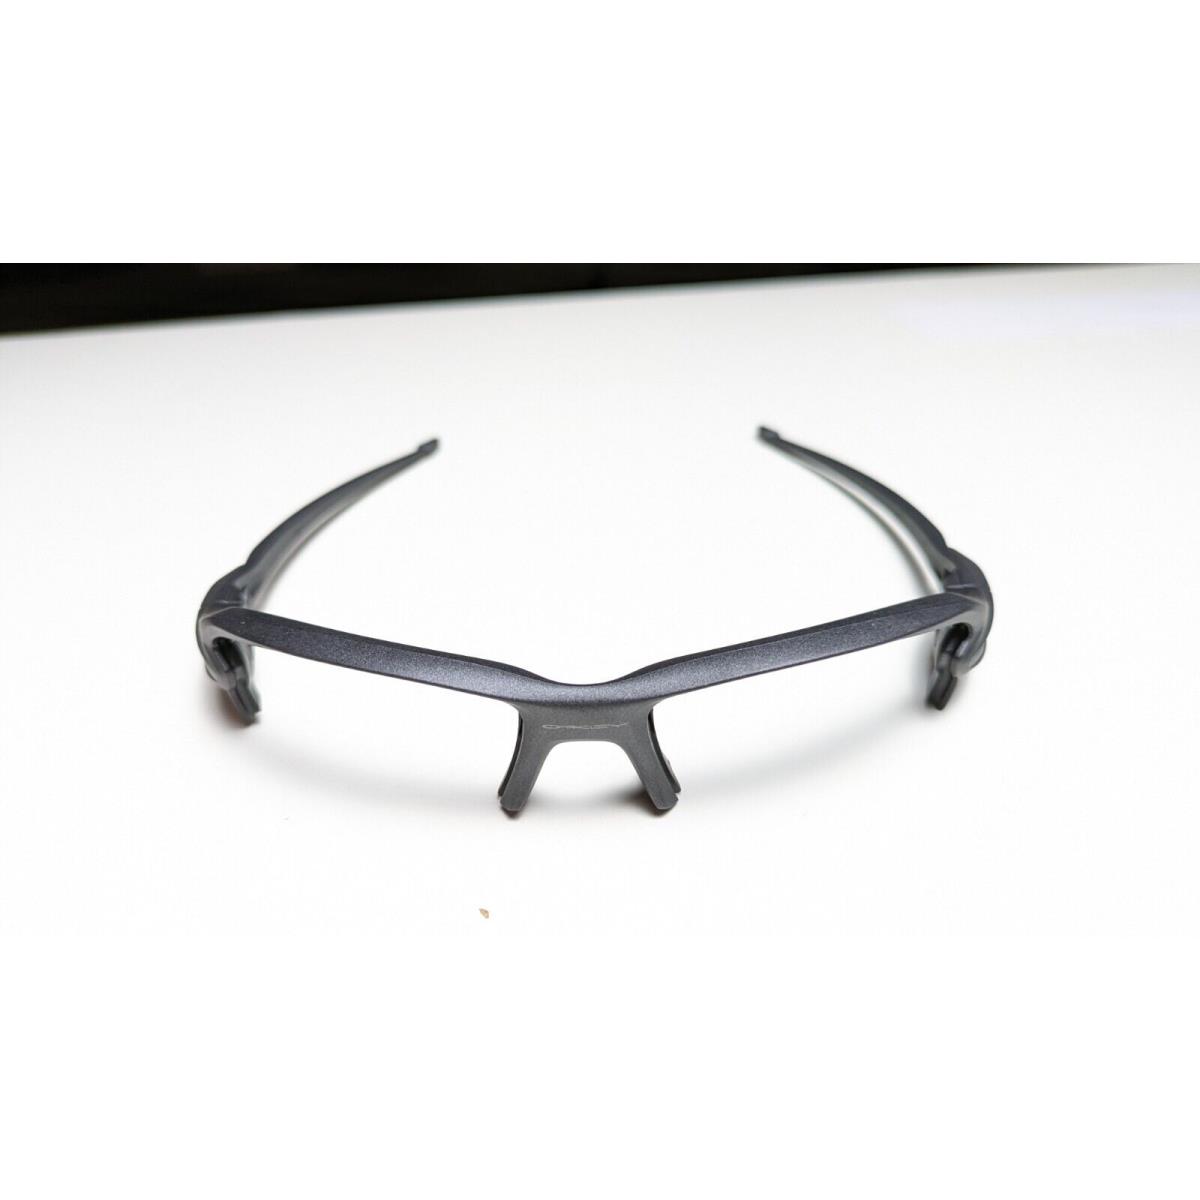 Oakley Flak 2.0 Sunglasses Gunmetal Frames Only Bare Ocp - Frame: Gunmetal